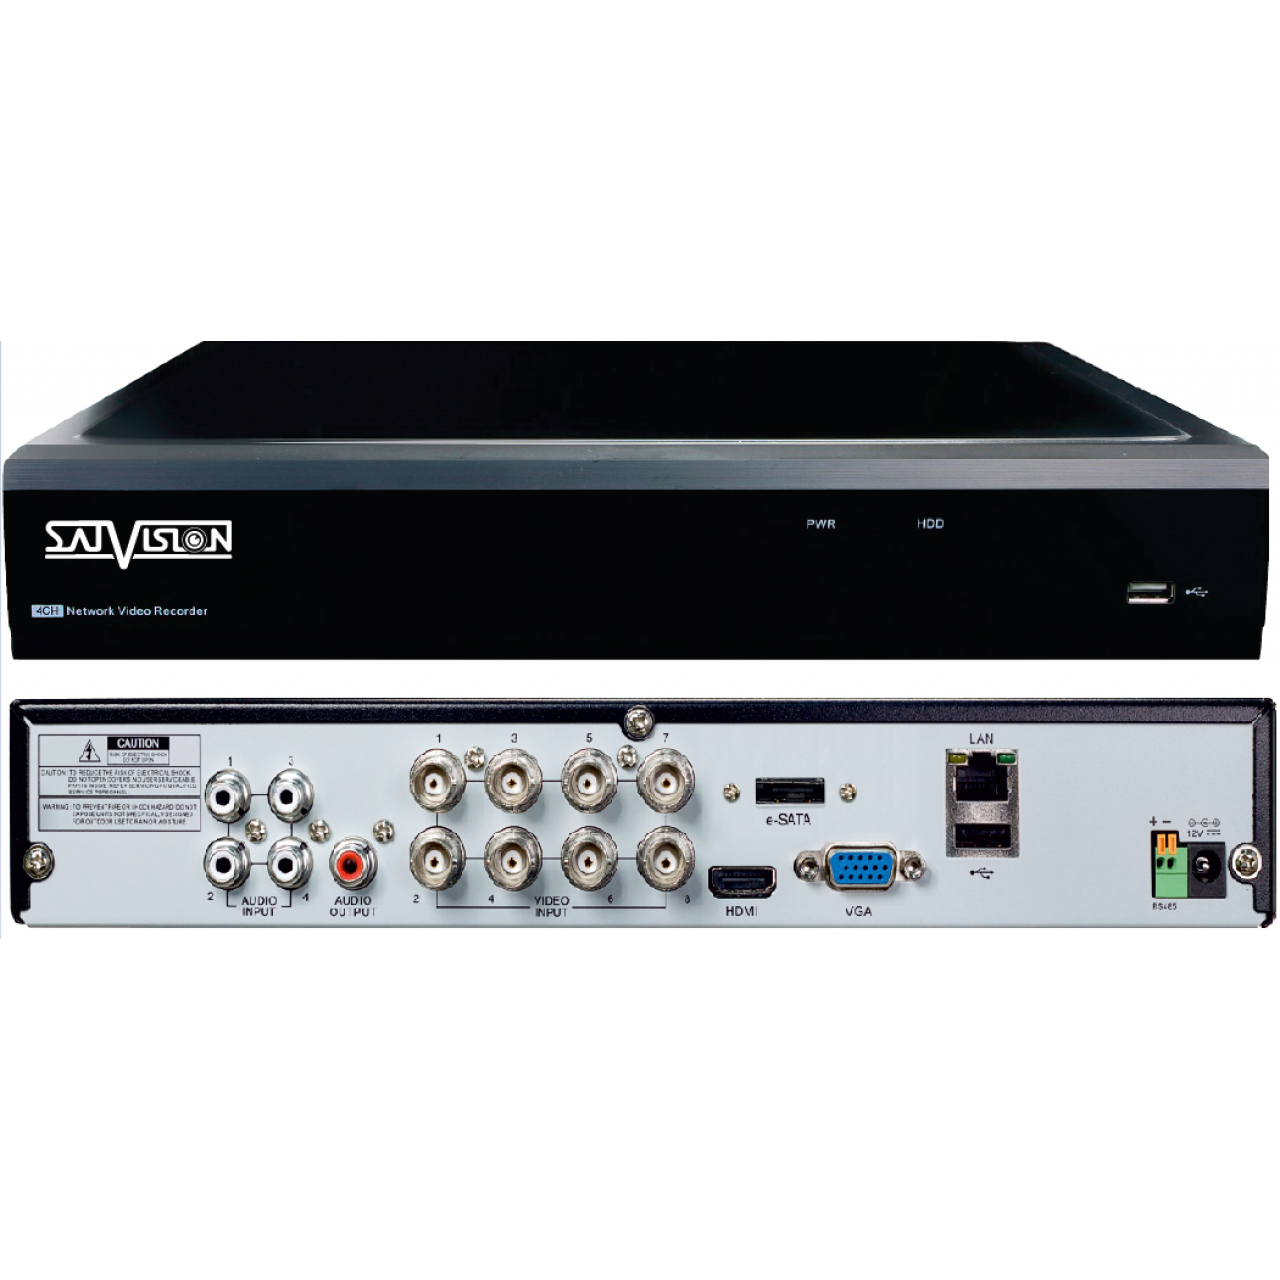 Гибридный 8-х канальный видеорегистратор SVR-8115P v2.0